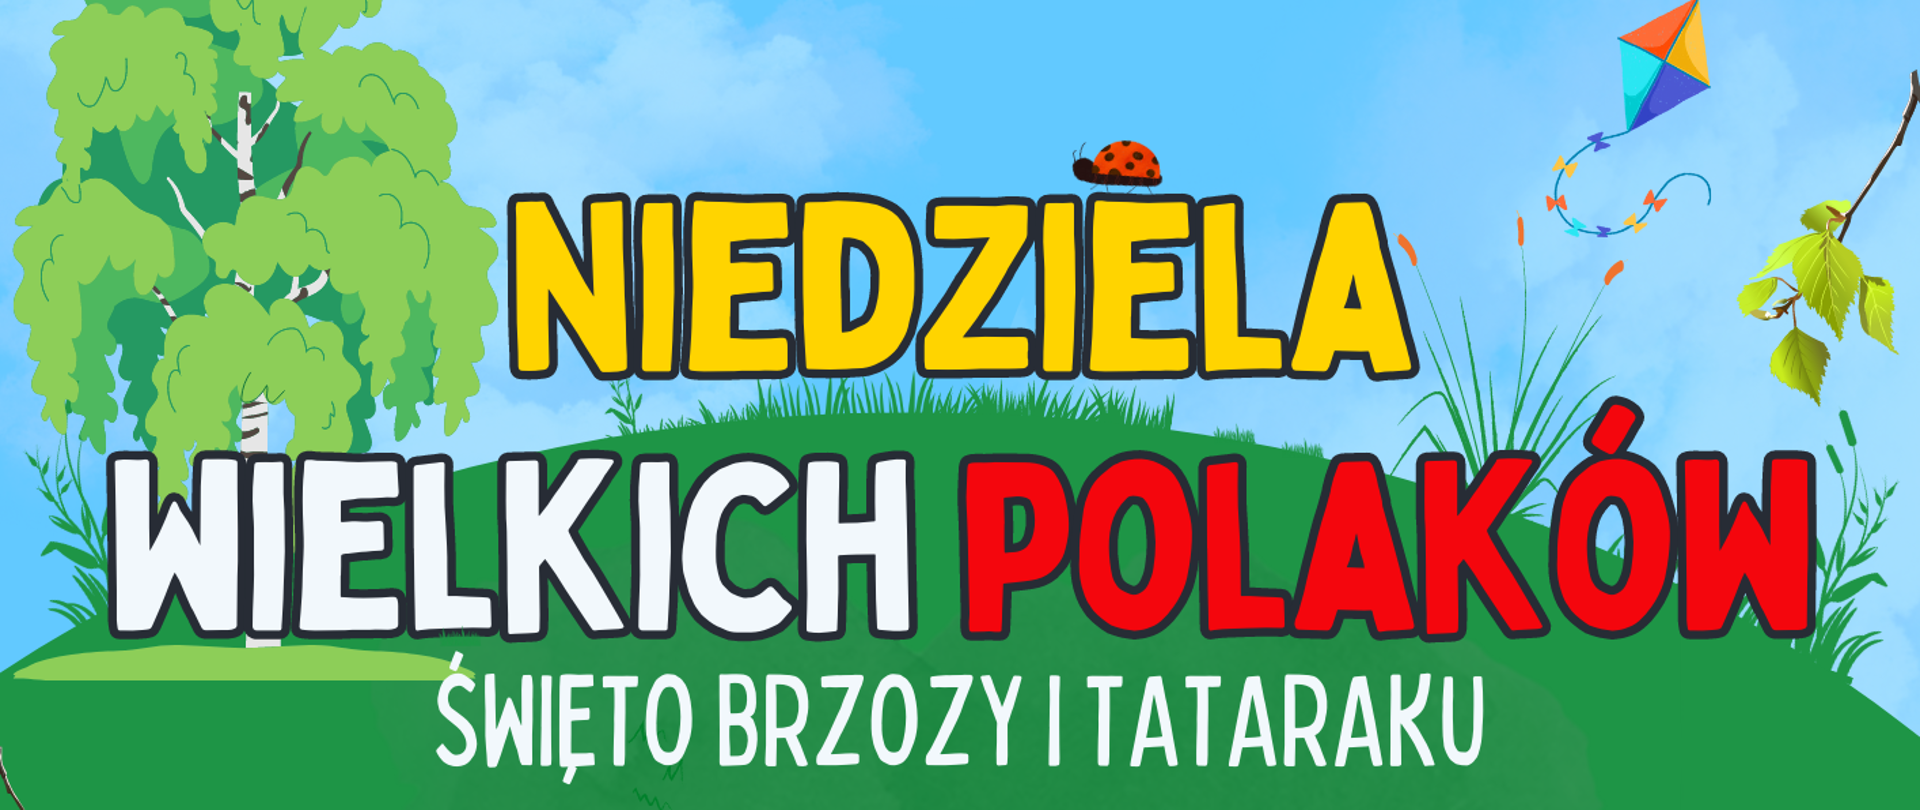 Piknik rodzinny Niedziela Wielkich Polaków. Święto brzozy i tataraku